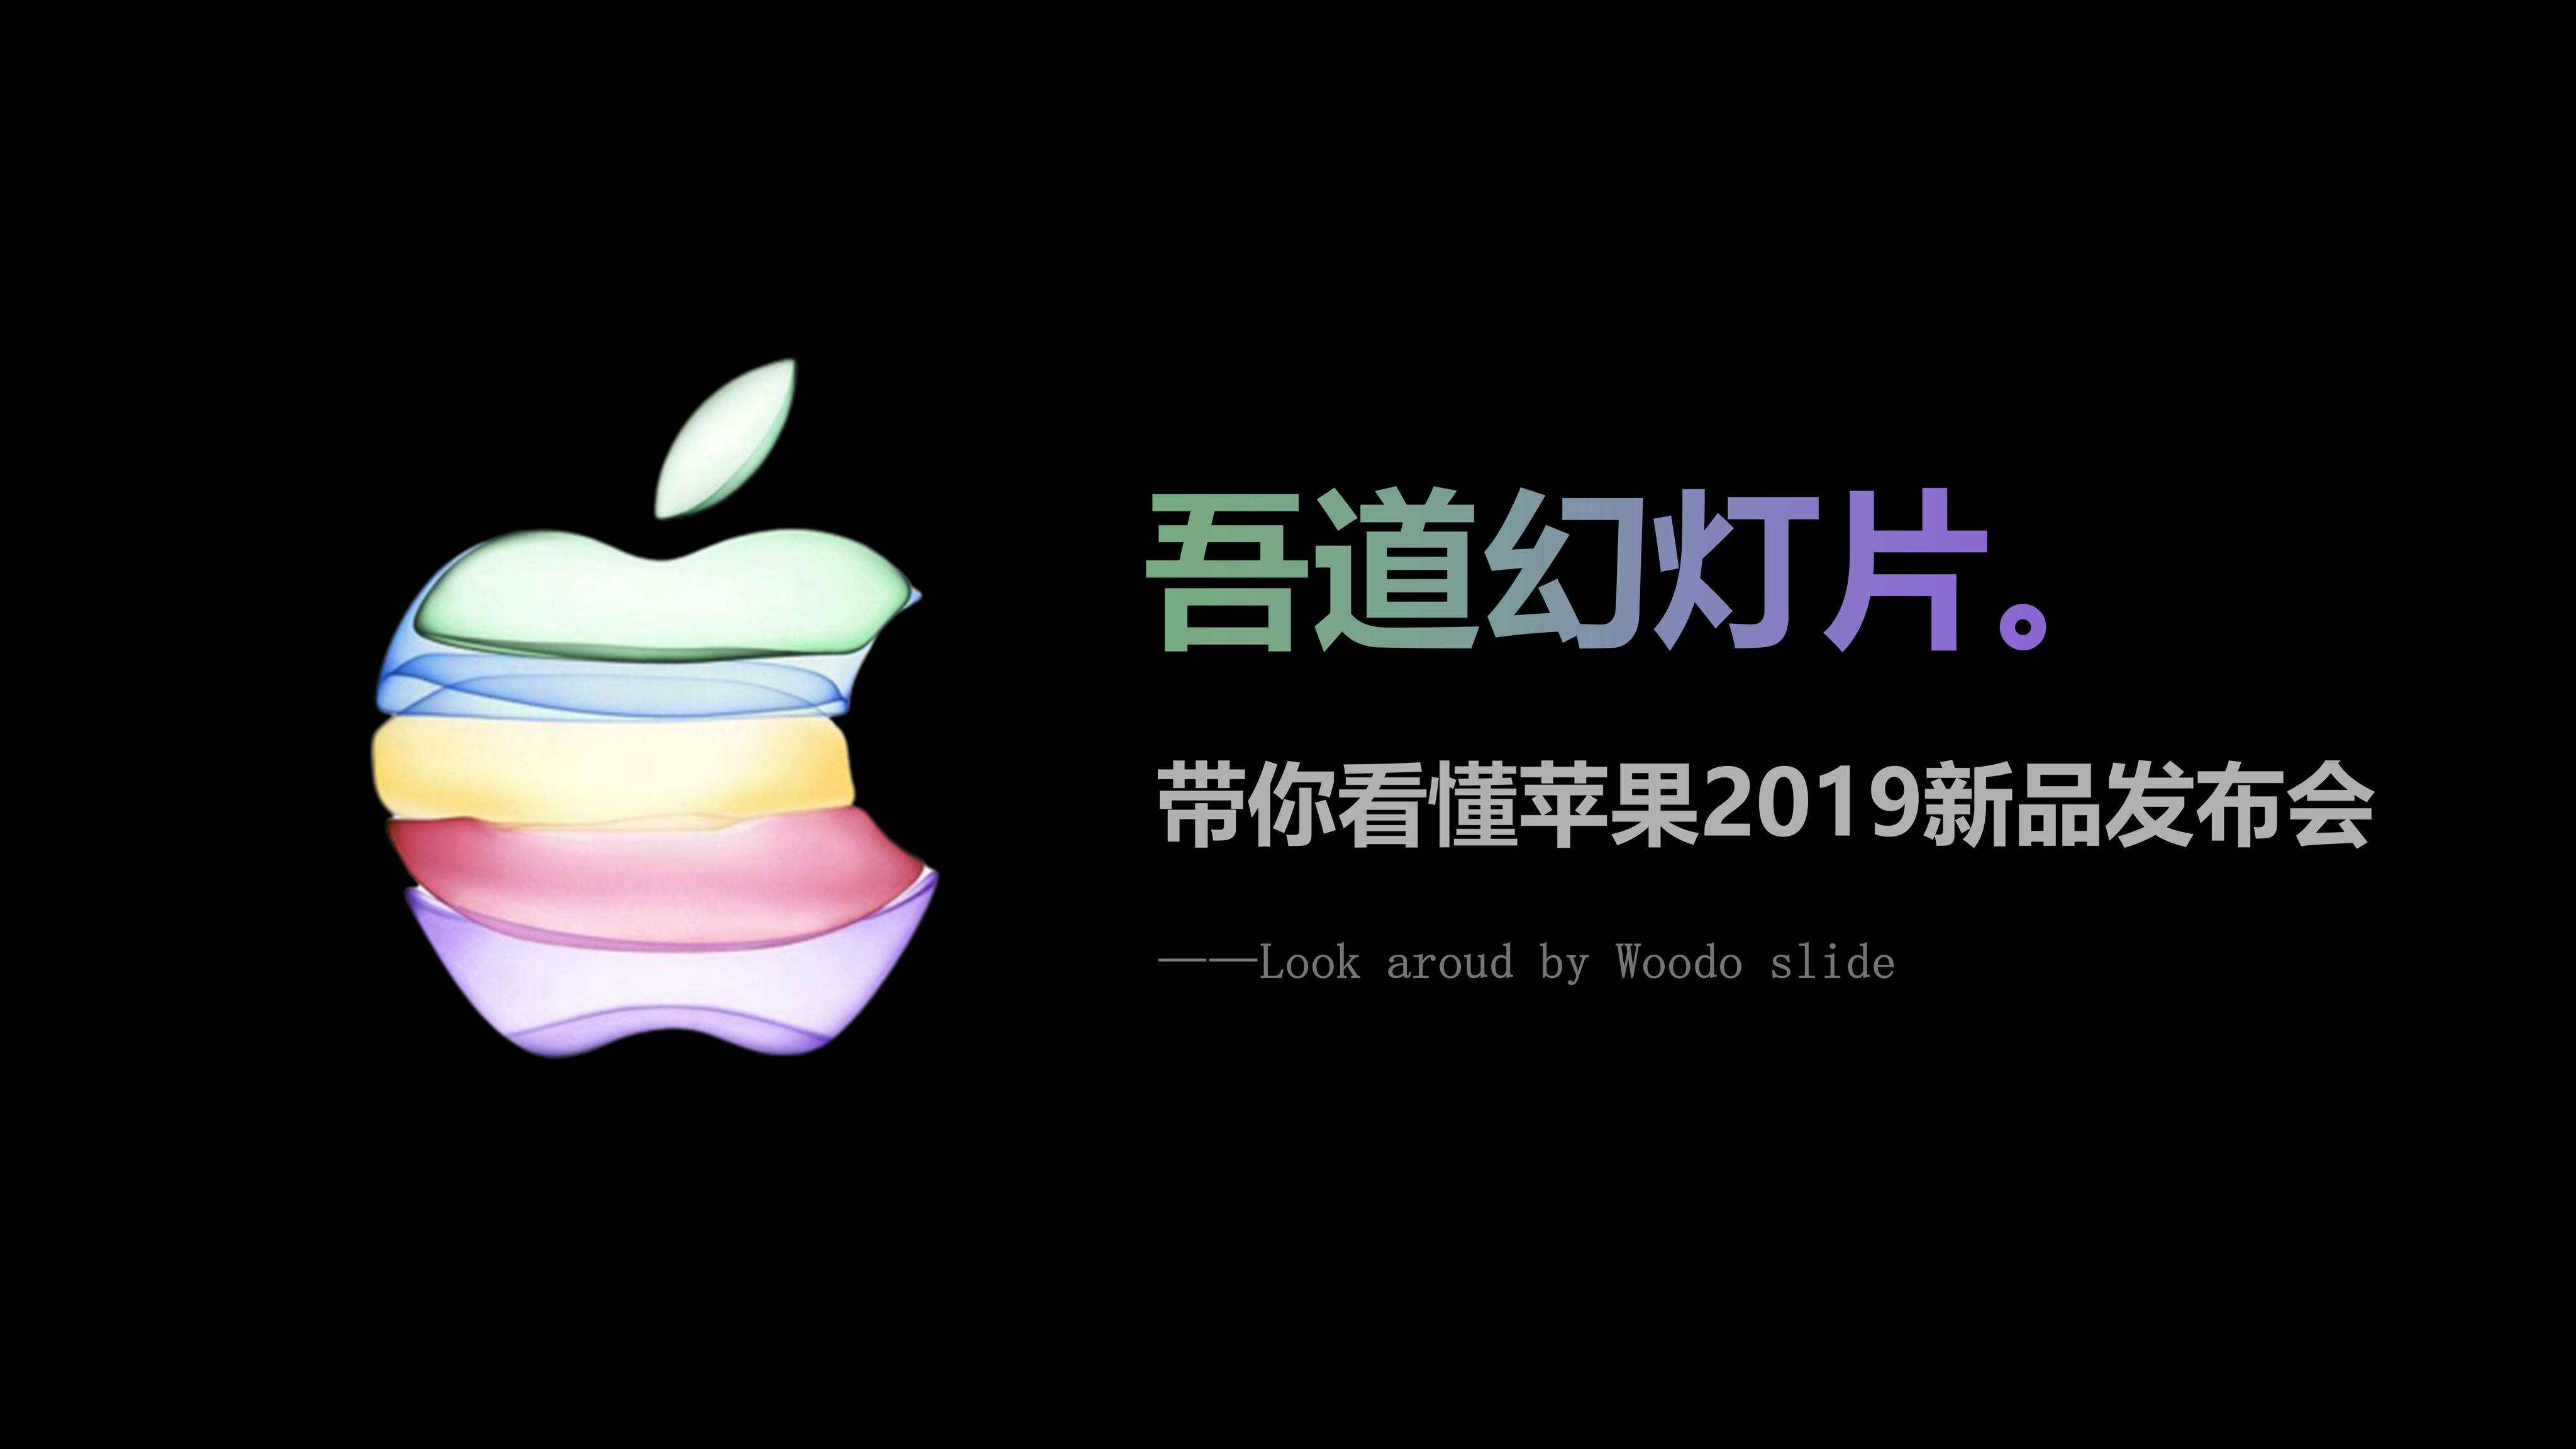 中国苹果进出口平稳 提升品质是产业做强必由之路 | 国际果蔬报道